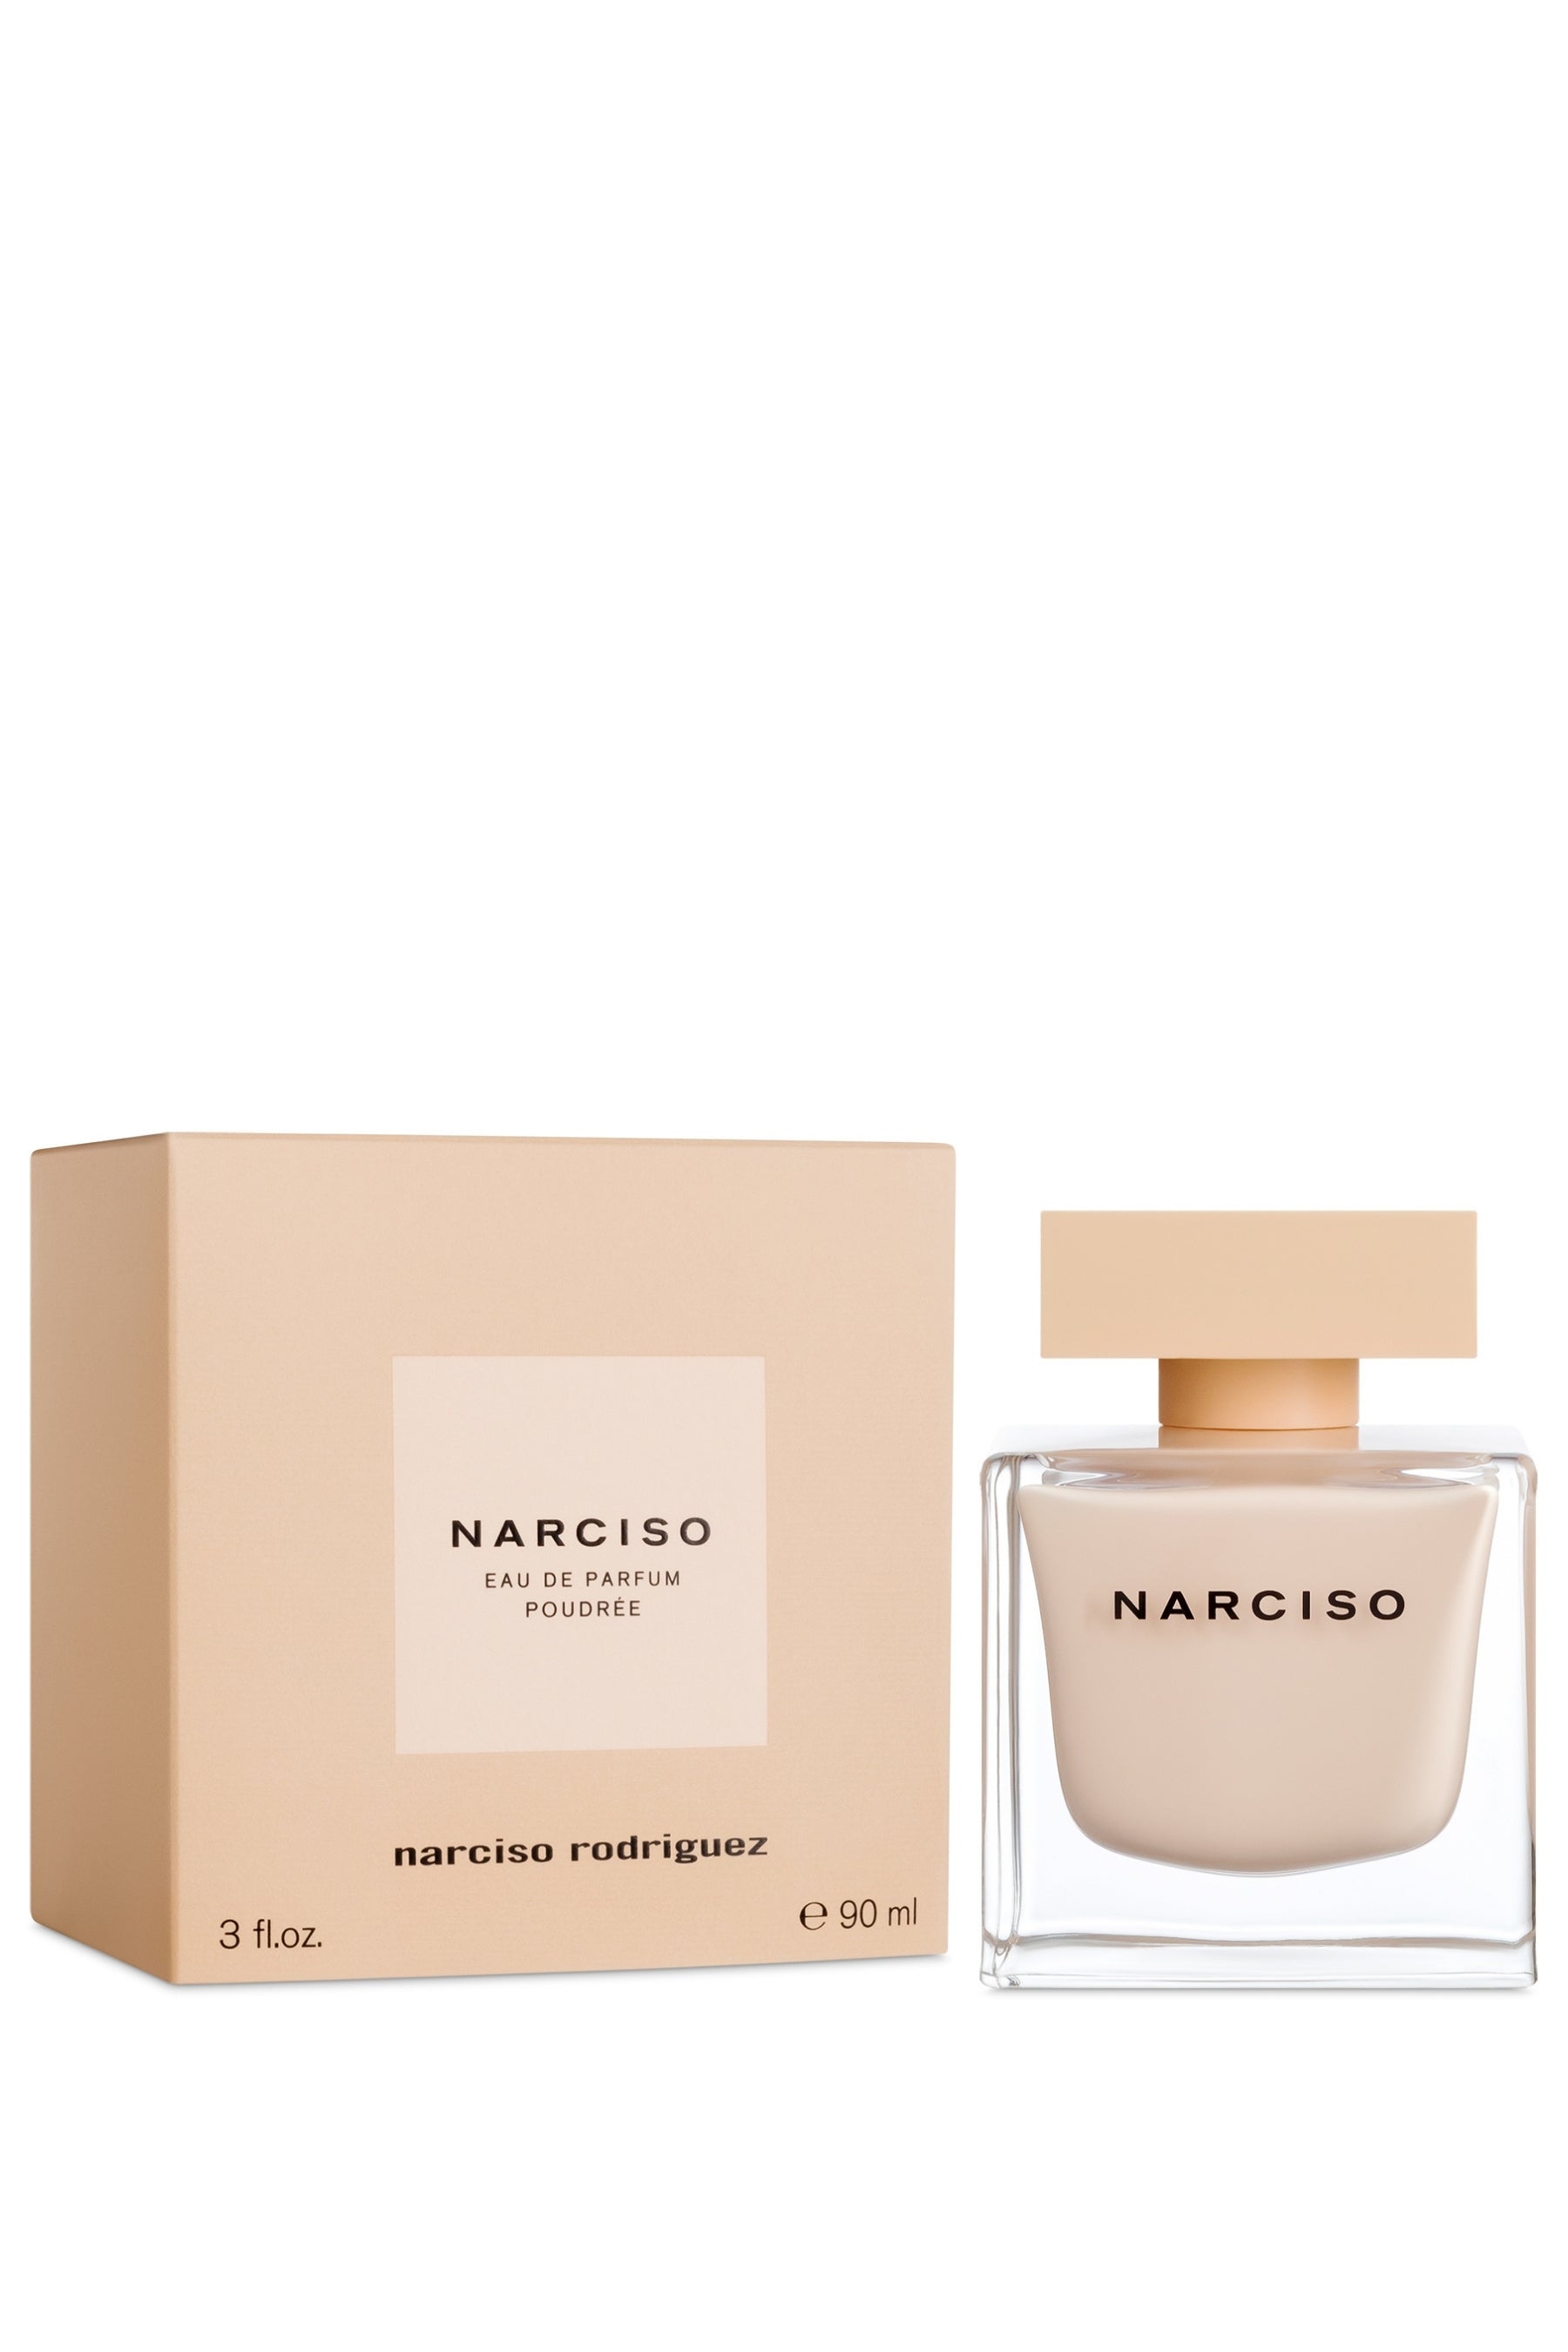 | de Narciso - Eau REBL Rodriguez Parfum Poudree